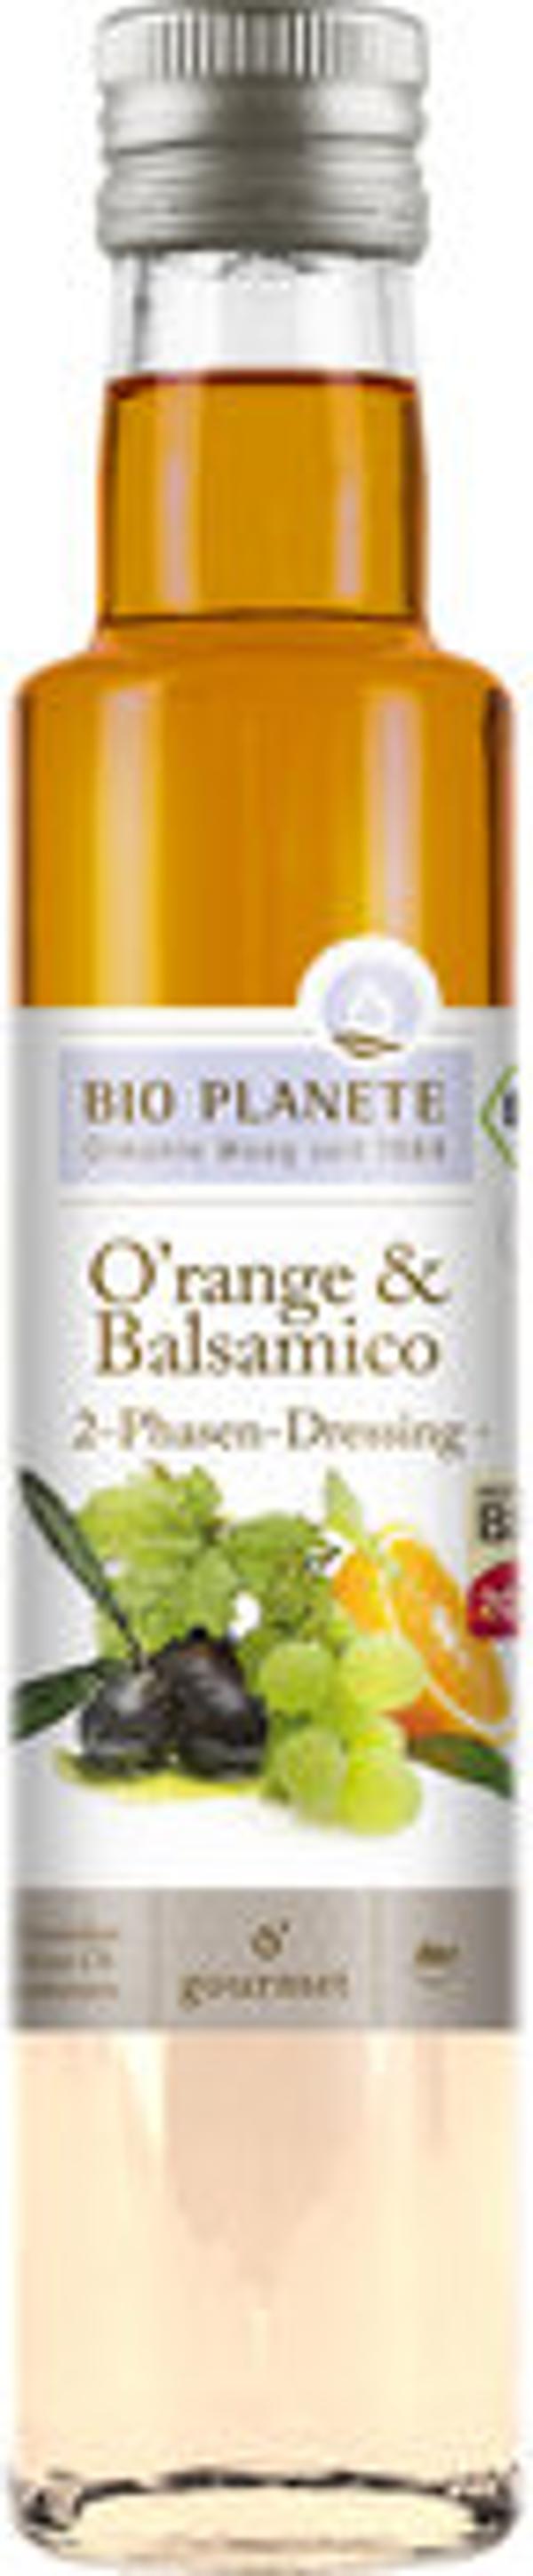 Produktfoto zu O'range und Balsamico Essig, 250 ml